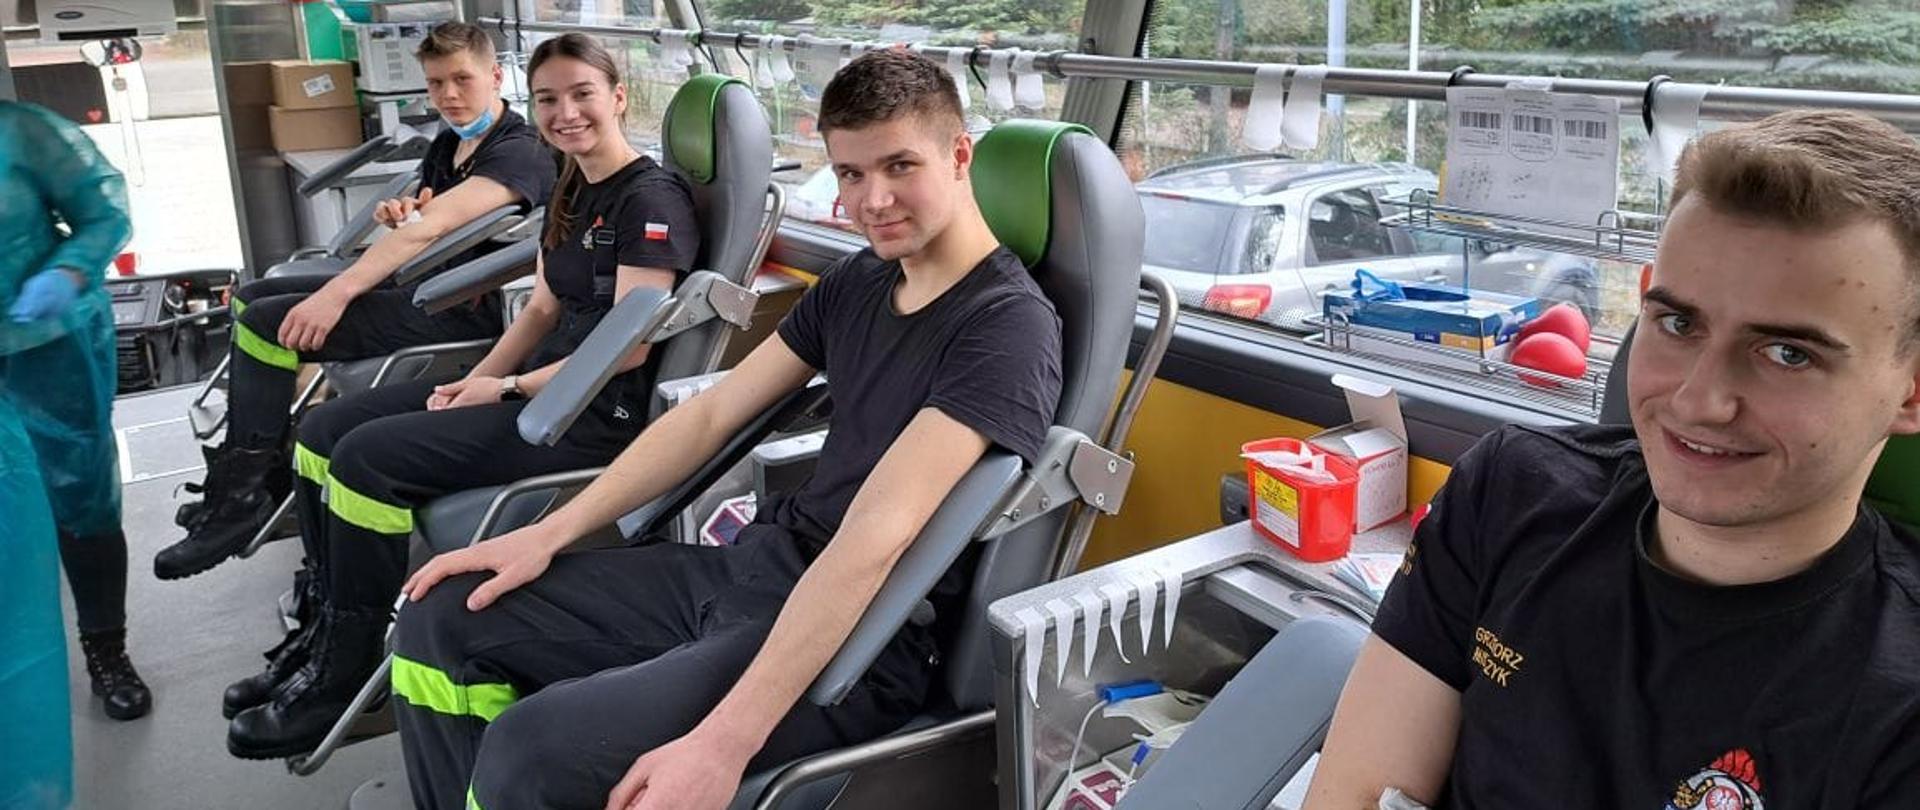 W specjalnym autobusie-ambulansie do pobierania krwi siedzi na fotelach czworo dawców-kadetów Centralnej Szkoły PSP (kobieta oraz trzech mężczyzn)